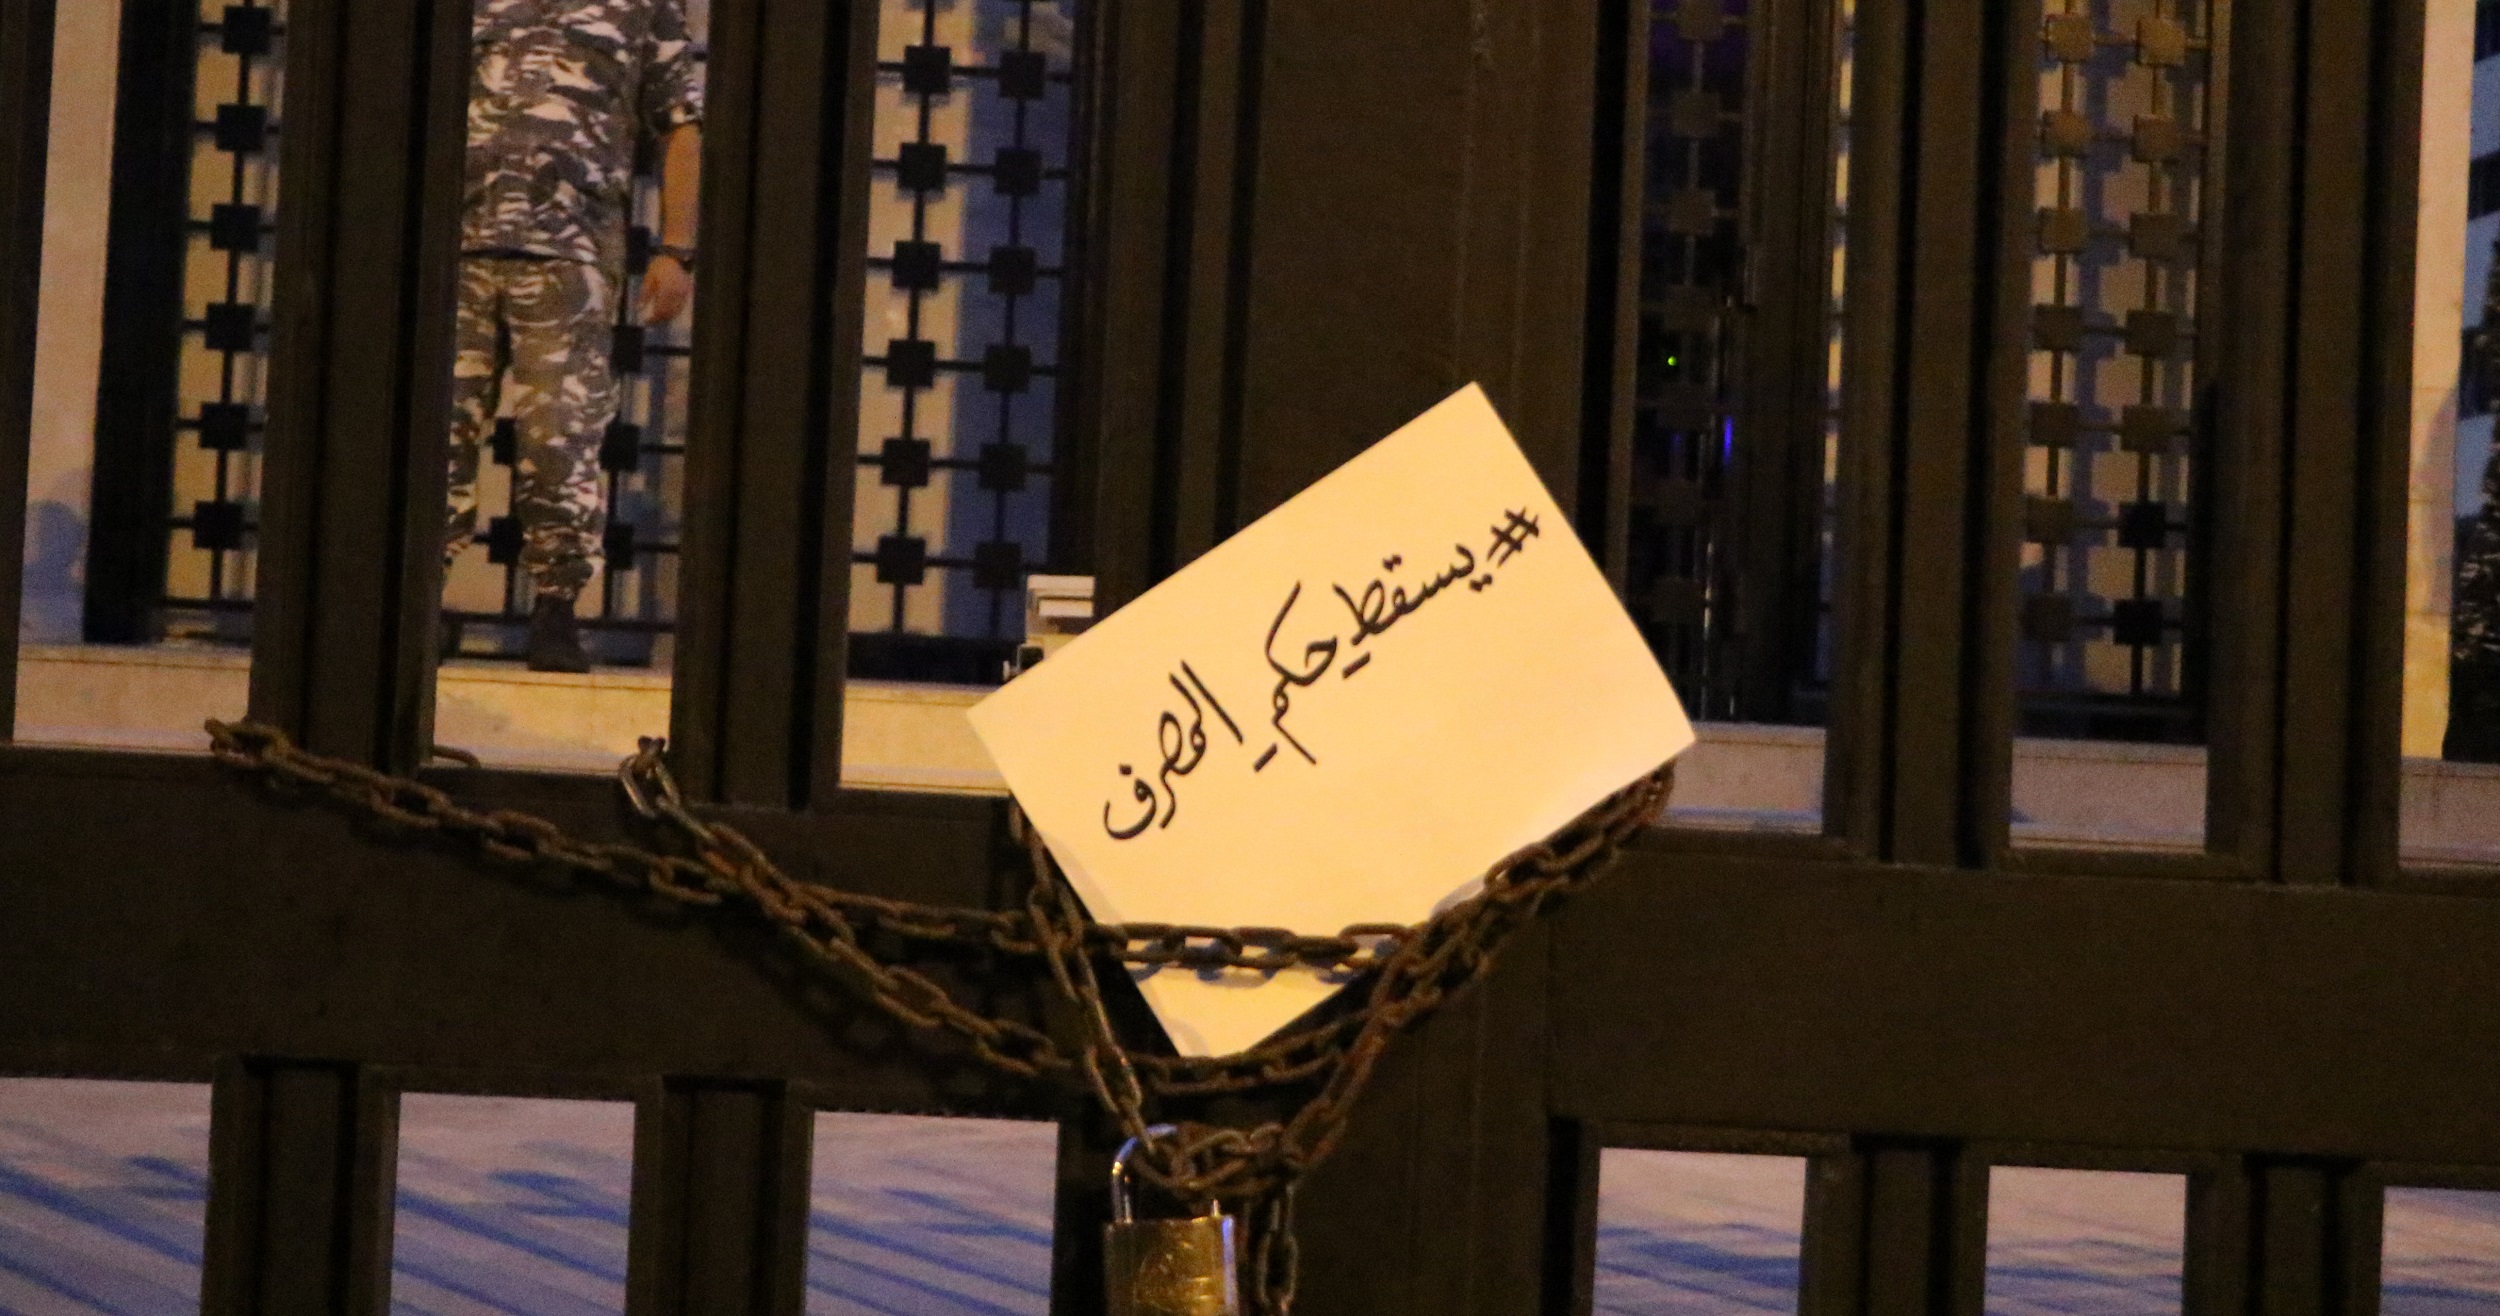 التعيينات في مصرف لبنان والرقابة على المصارف: عناوين مغيّبة عن الخطاب العام